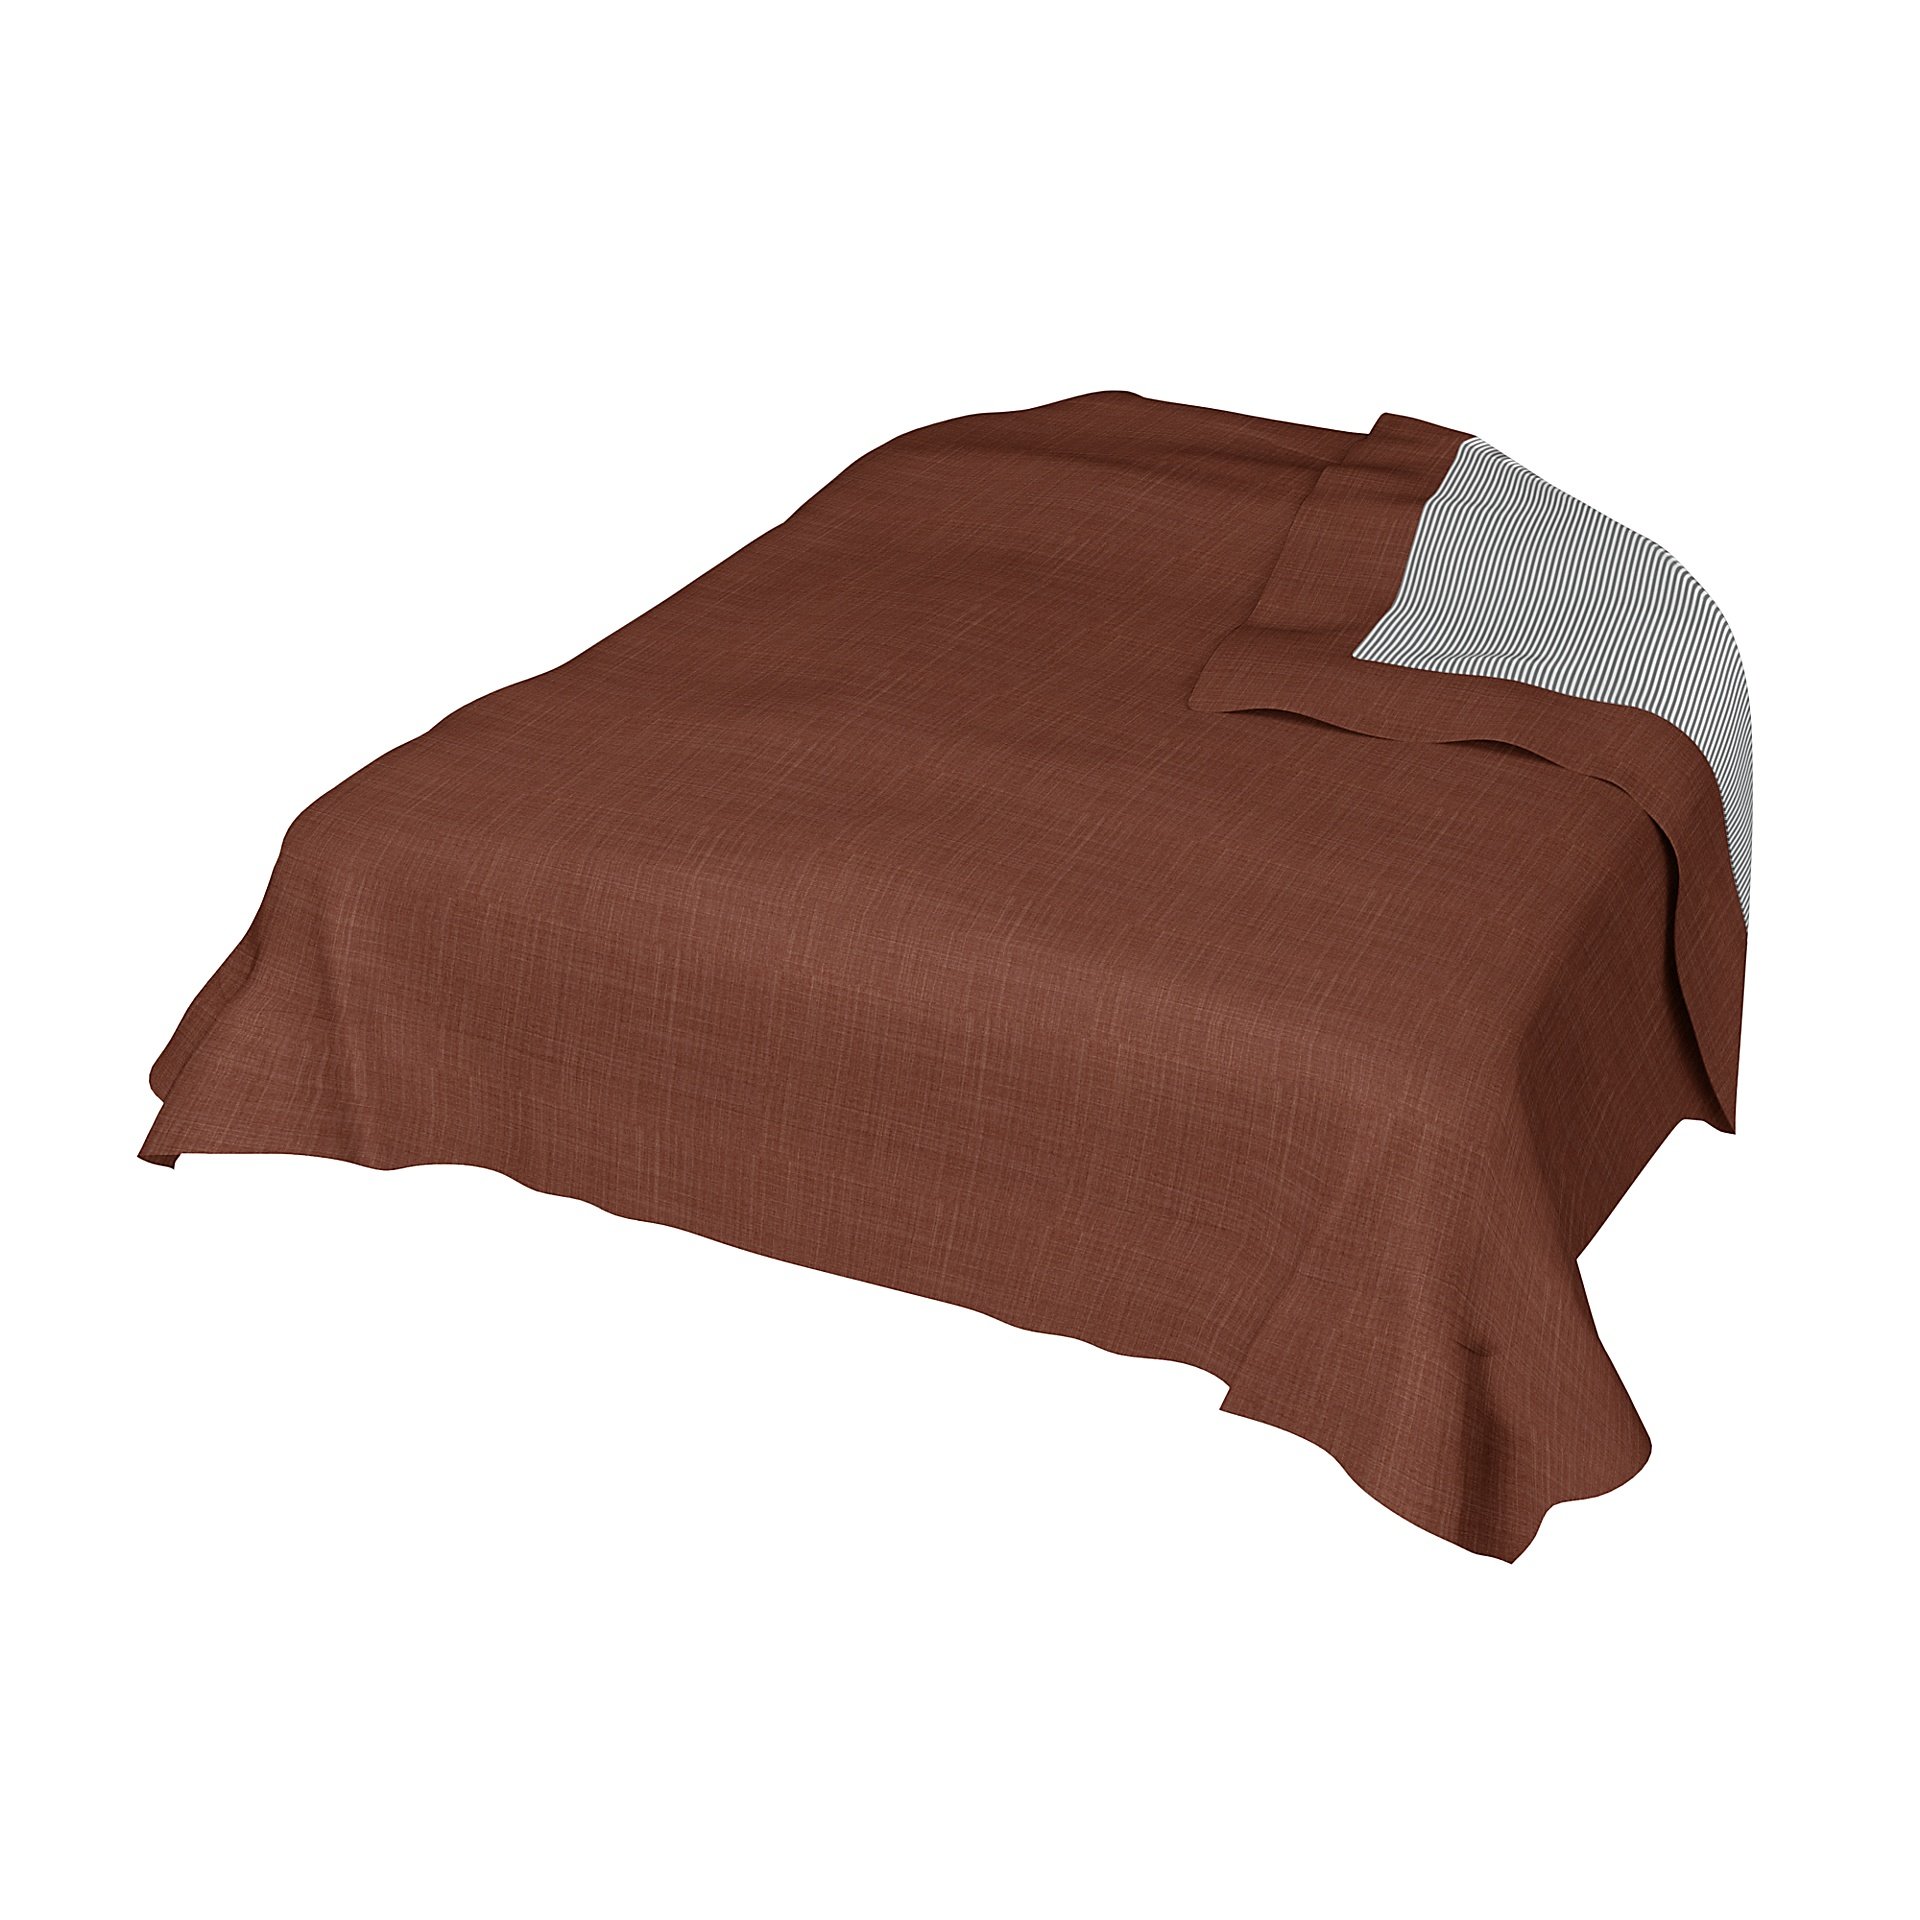 Bedspread, Rust, Boucle & Texture - Bemz